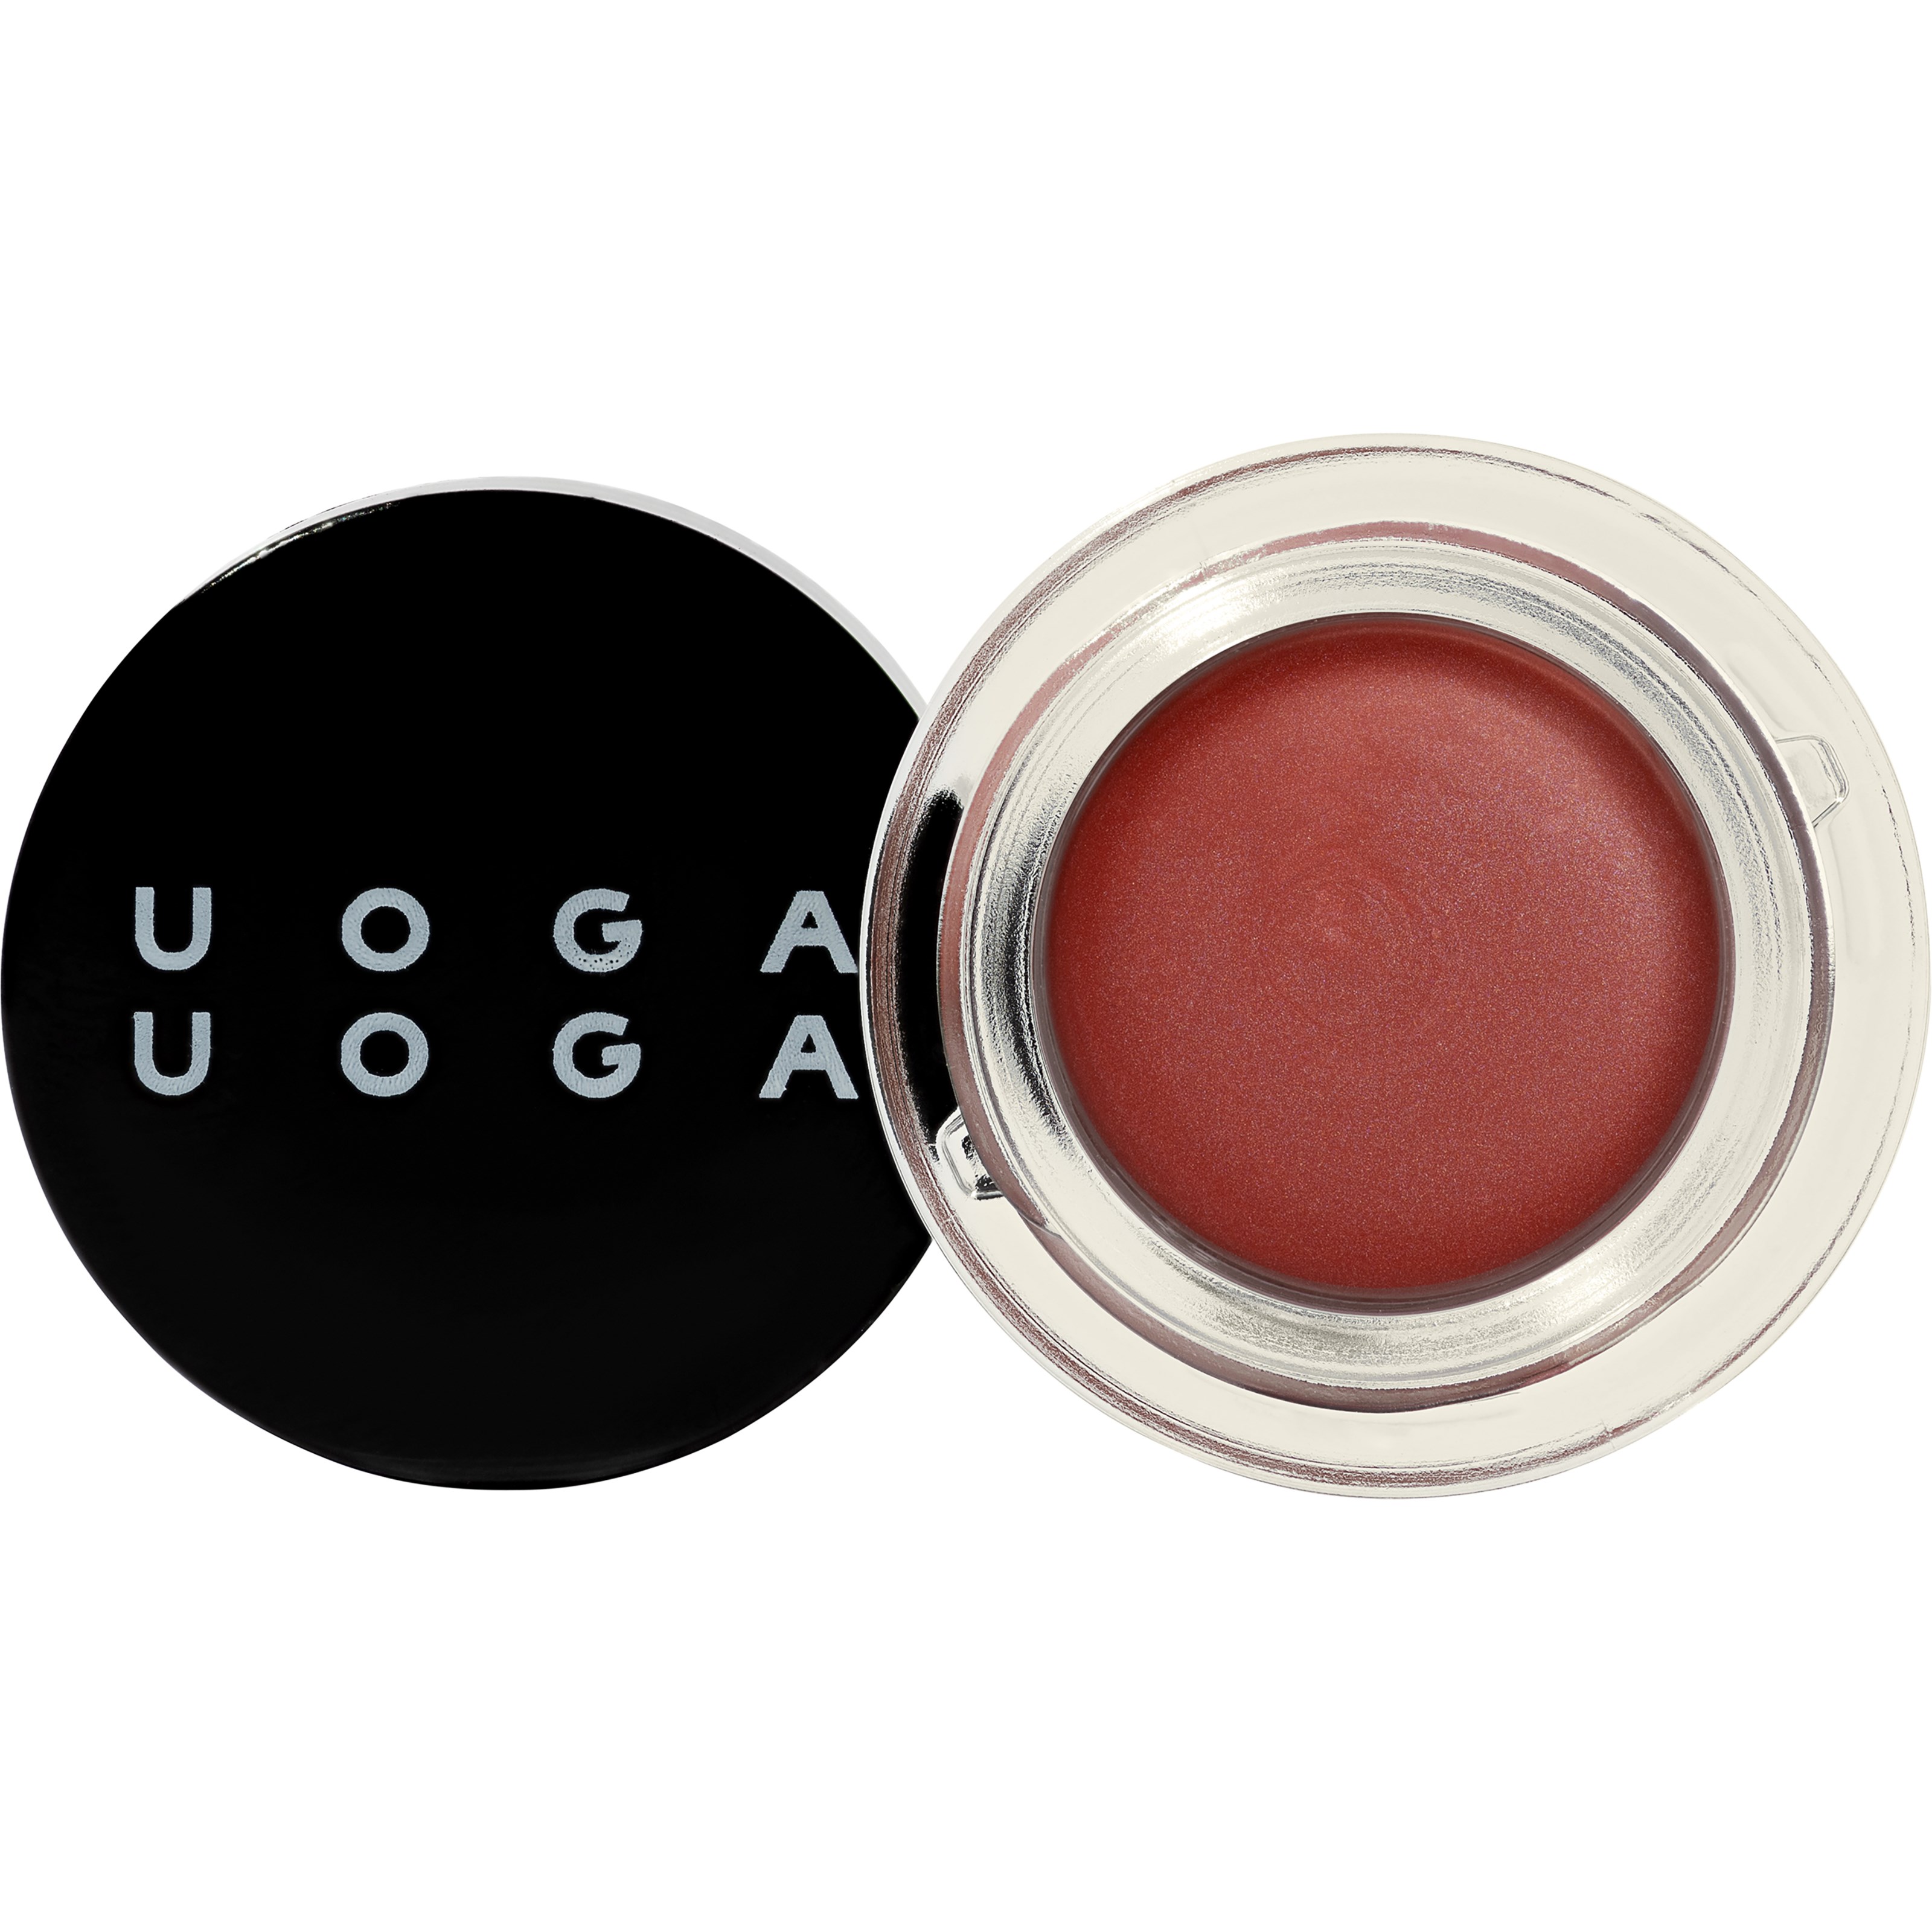 Bilde av Uoga Uoga Lip & Cheek Tint 2-in-1 Blush & Lip Colour Tender